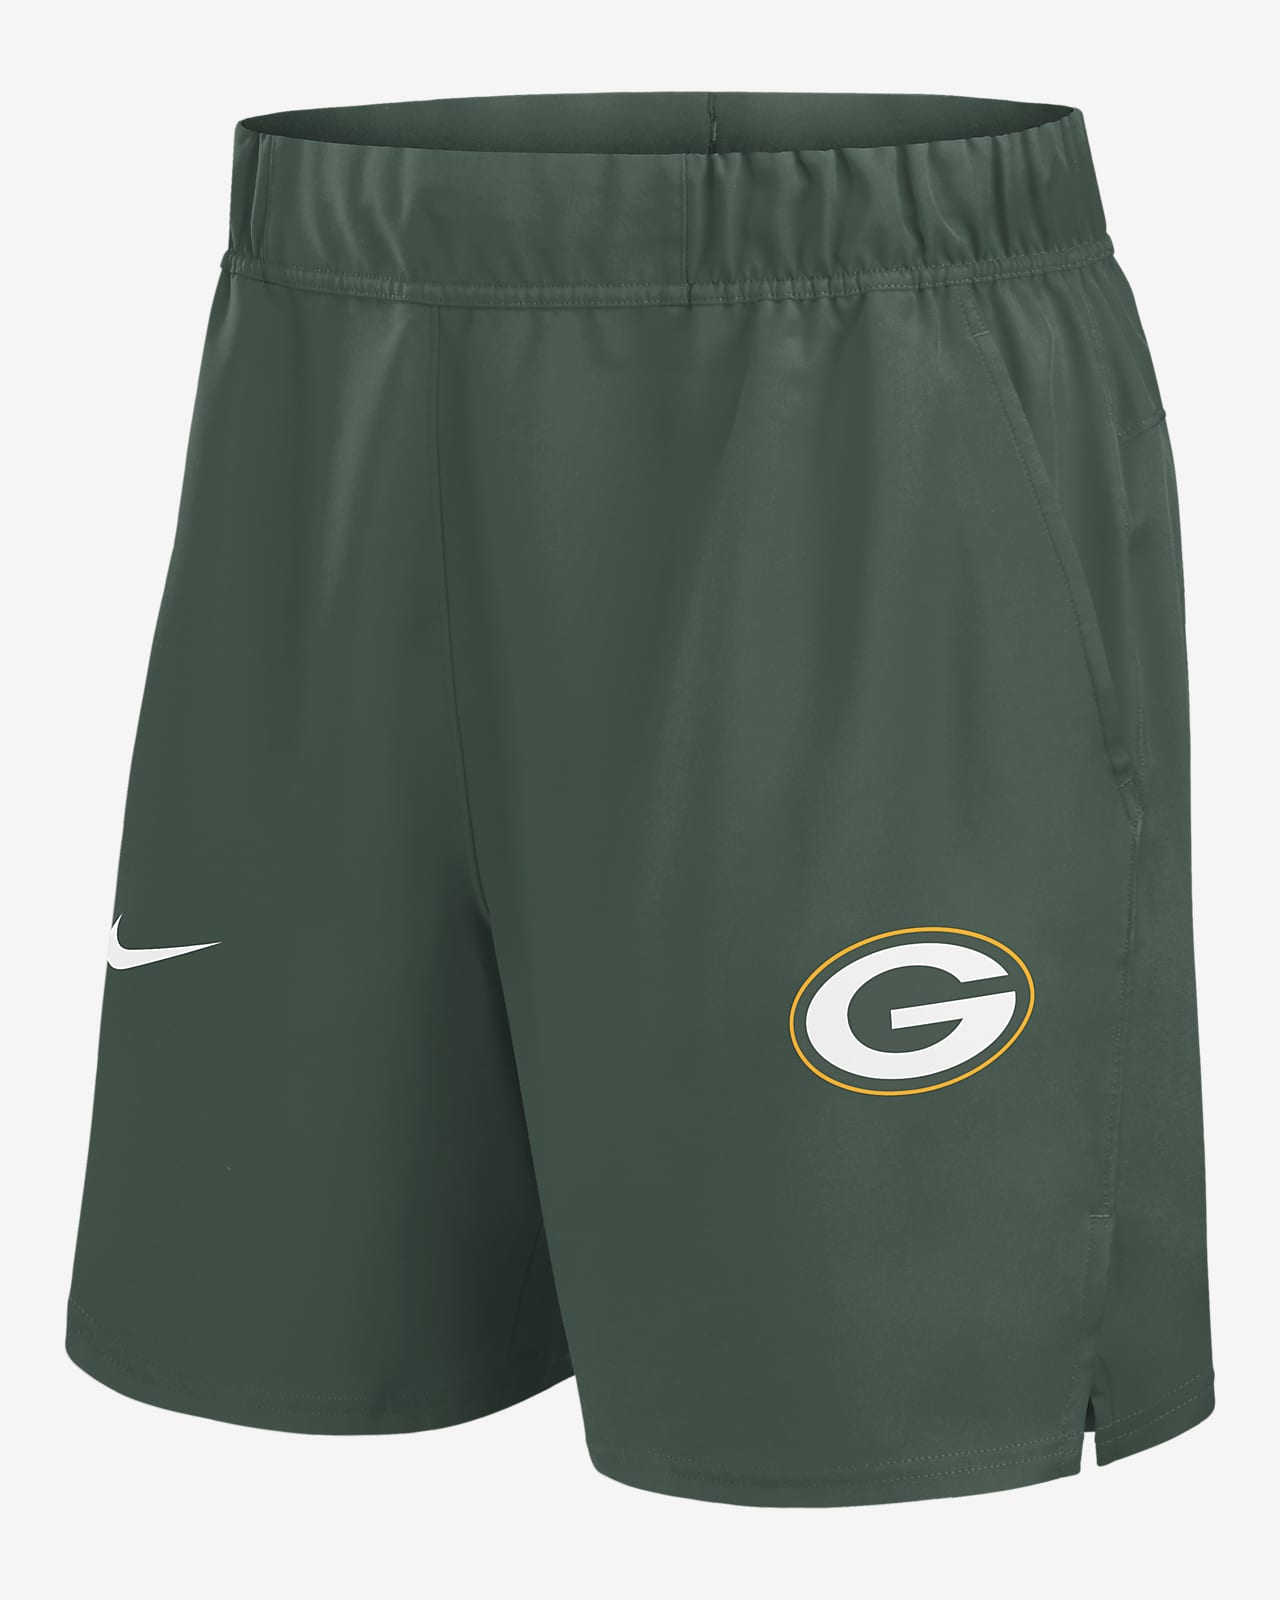 Shorts Nike Dri-FIT de la NFL para hombre Green Bay Packers Blitz Victory